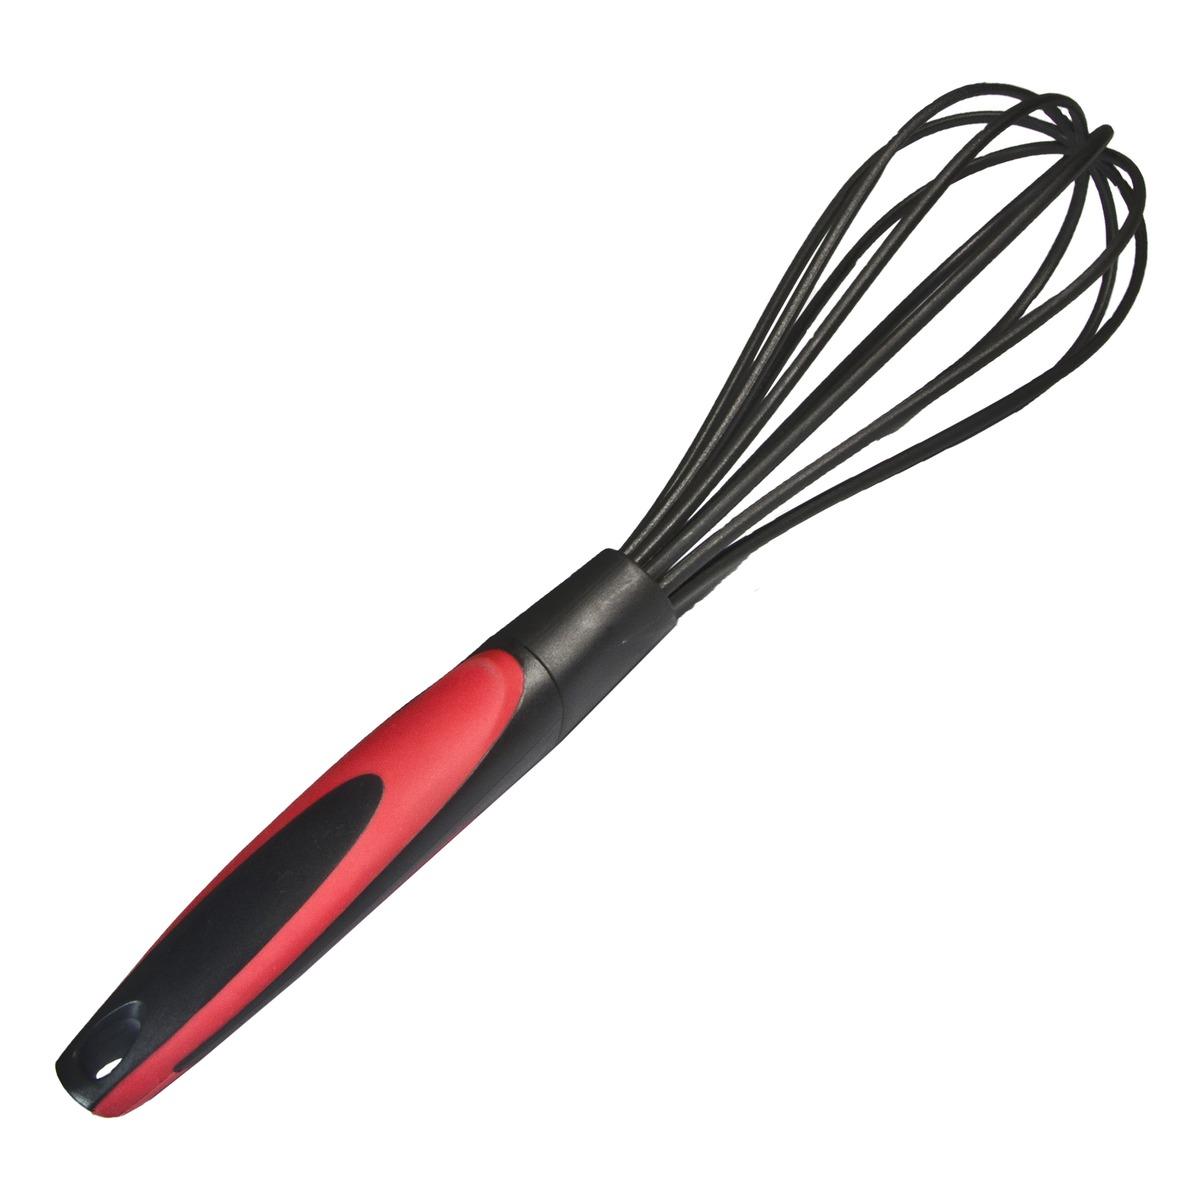 Fouet de cuisine en nylon - Longueur 29,5 cm - Noir et rouge